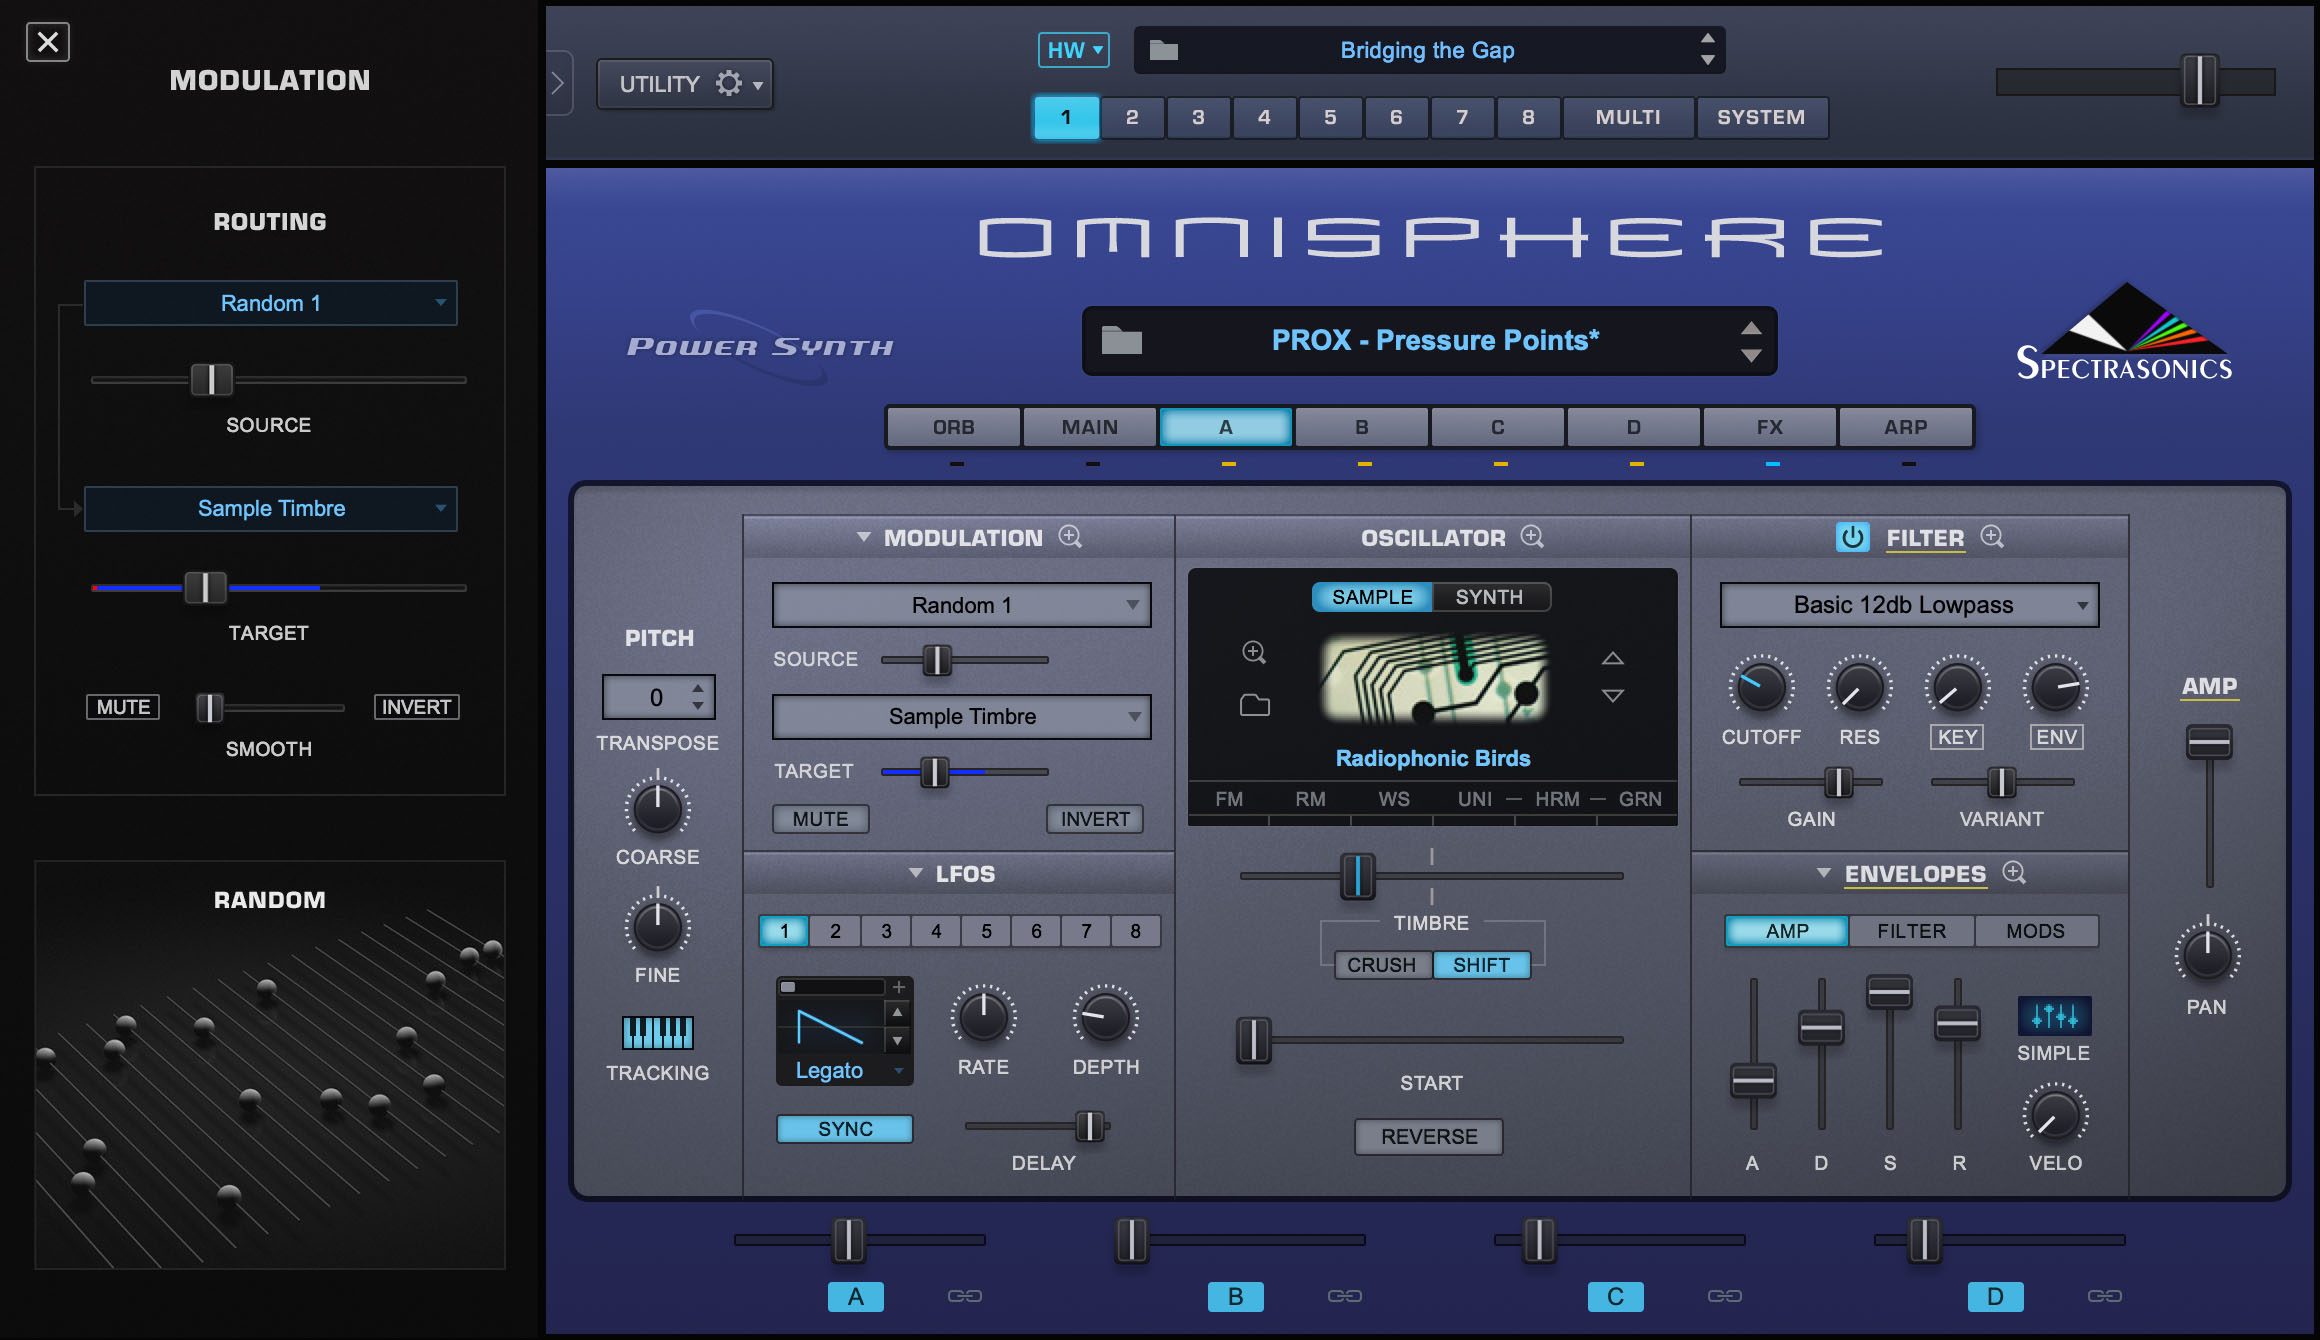 omnisphere 2 by spectrasonics crack mac torrent